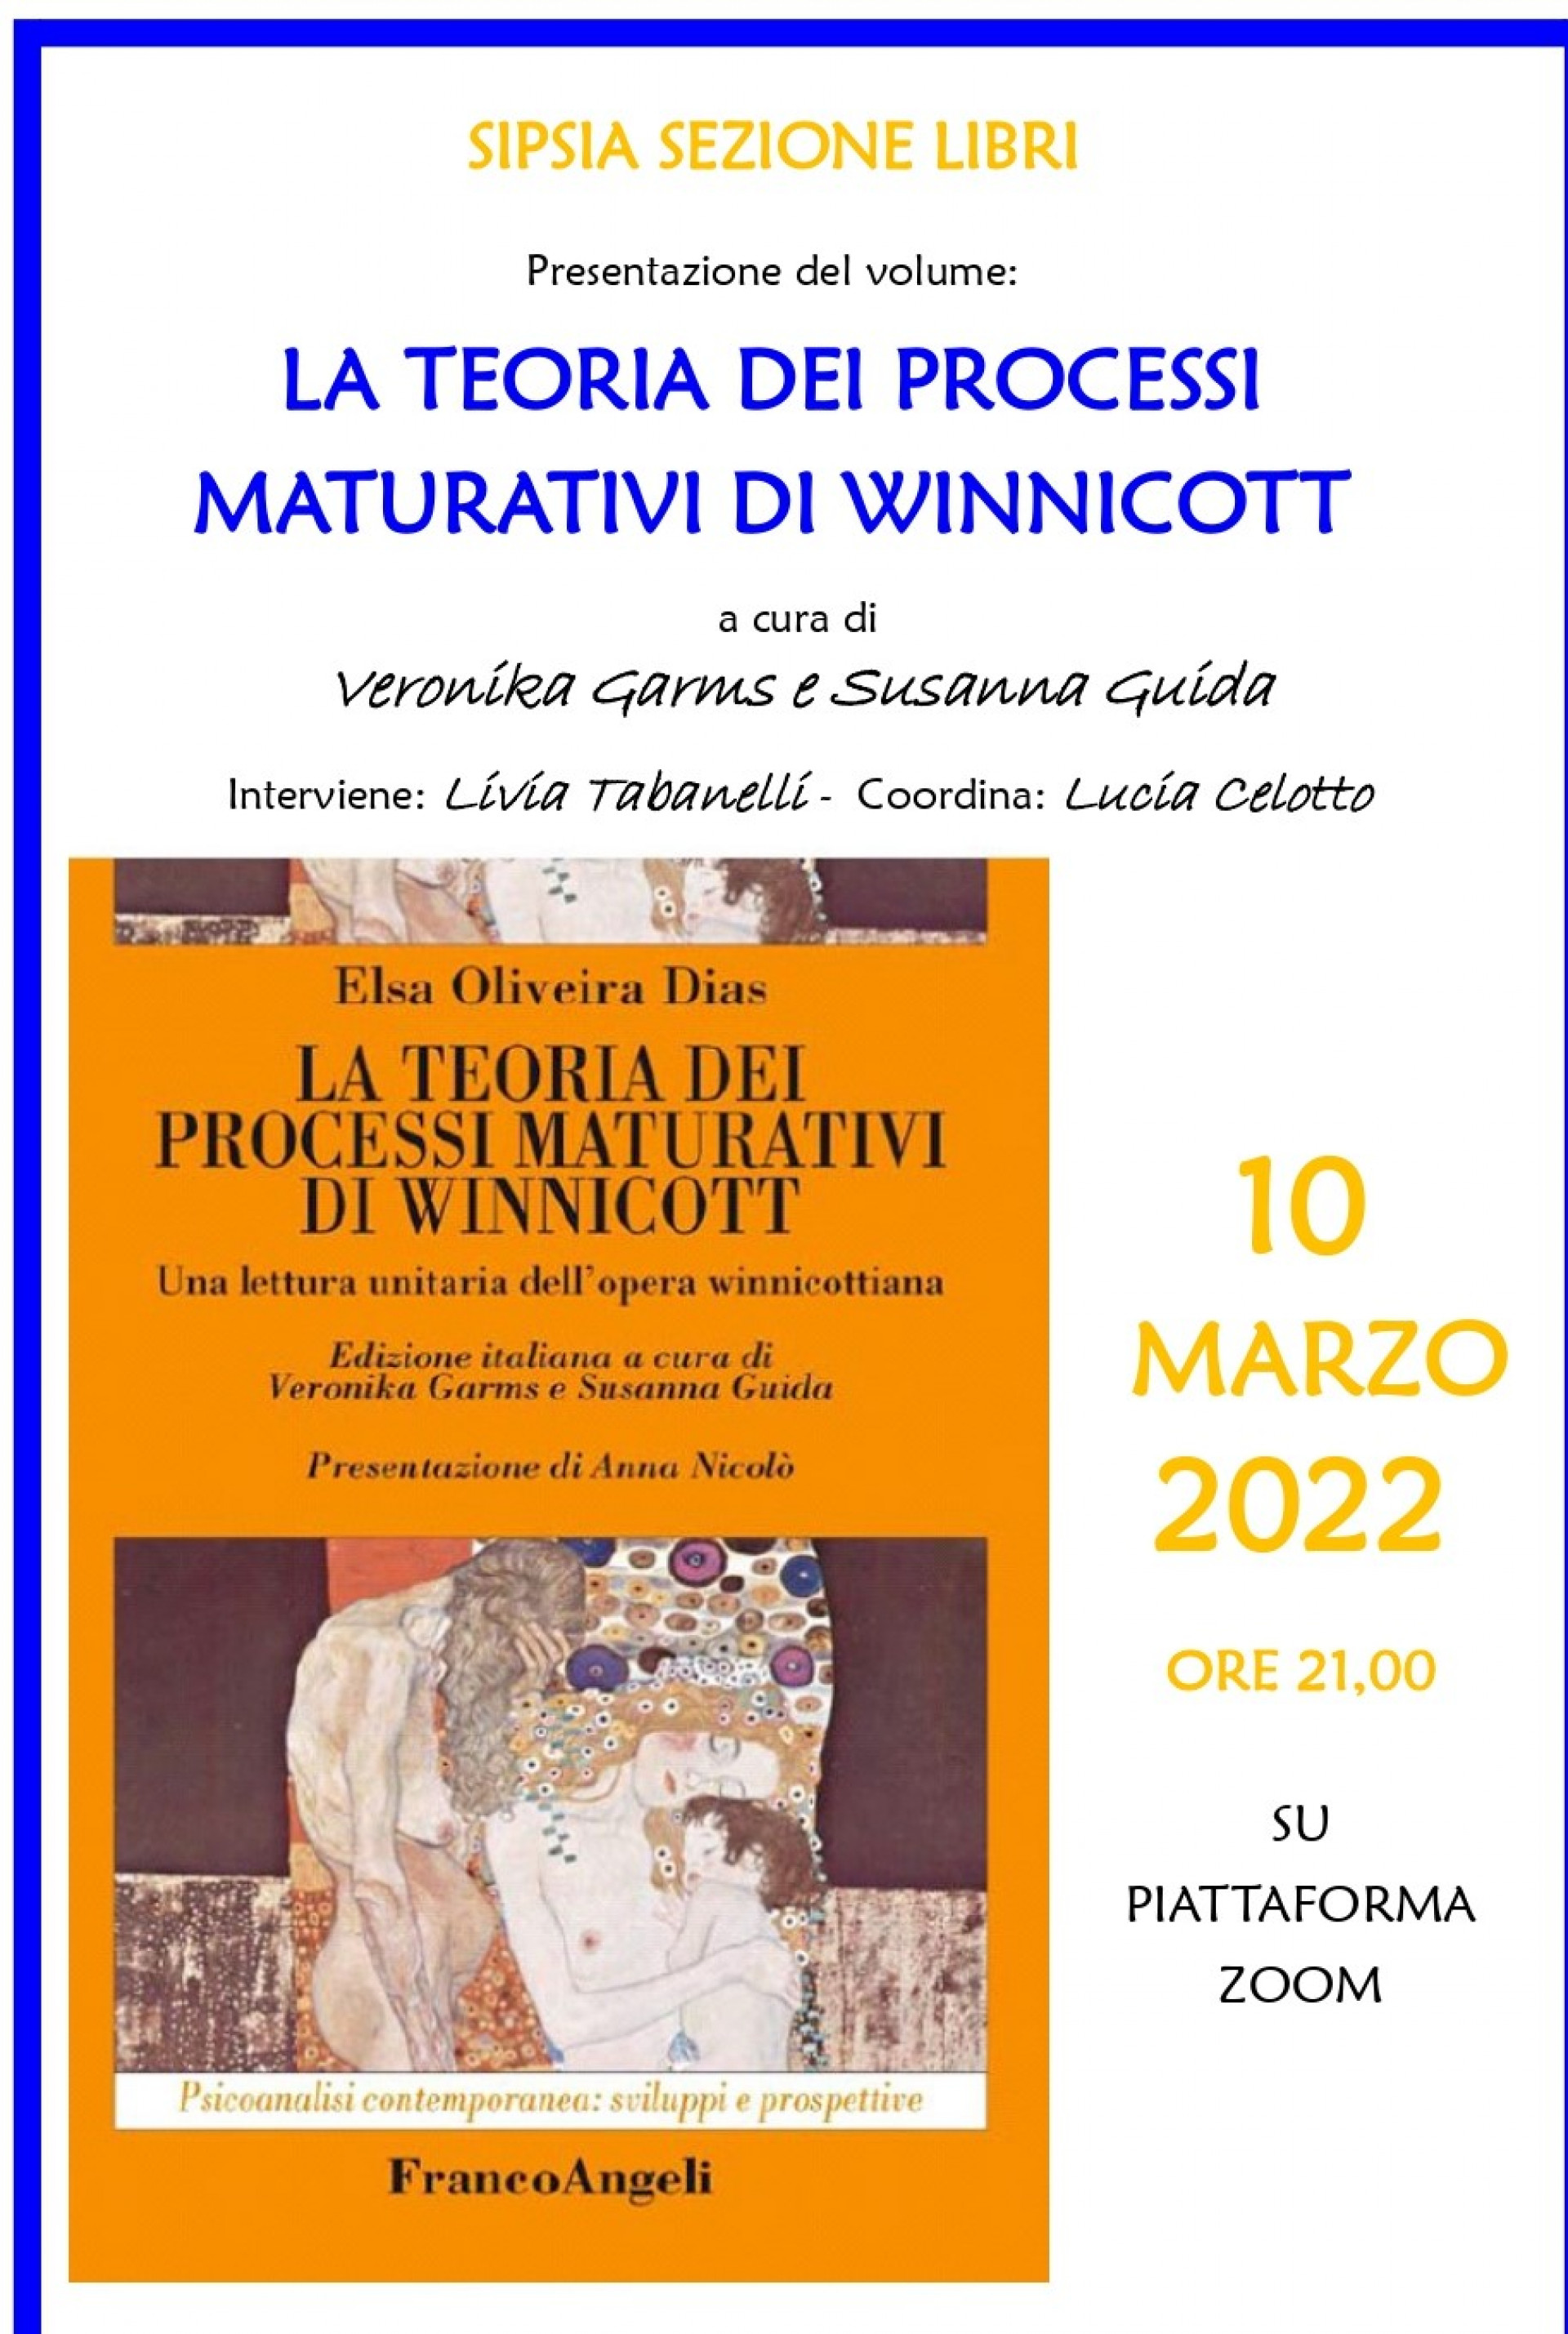 La teoria dei processi maturativi di Winnicot - SIPsIA Sezione Libri